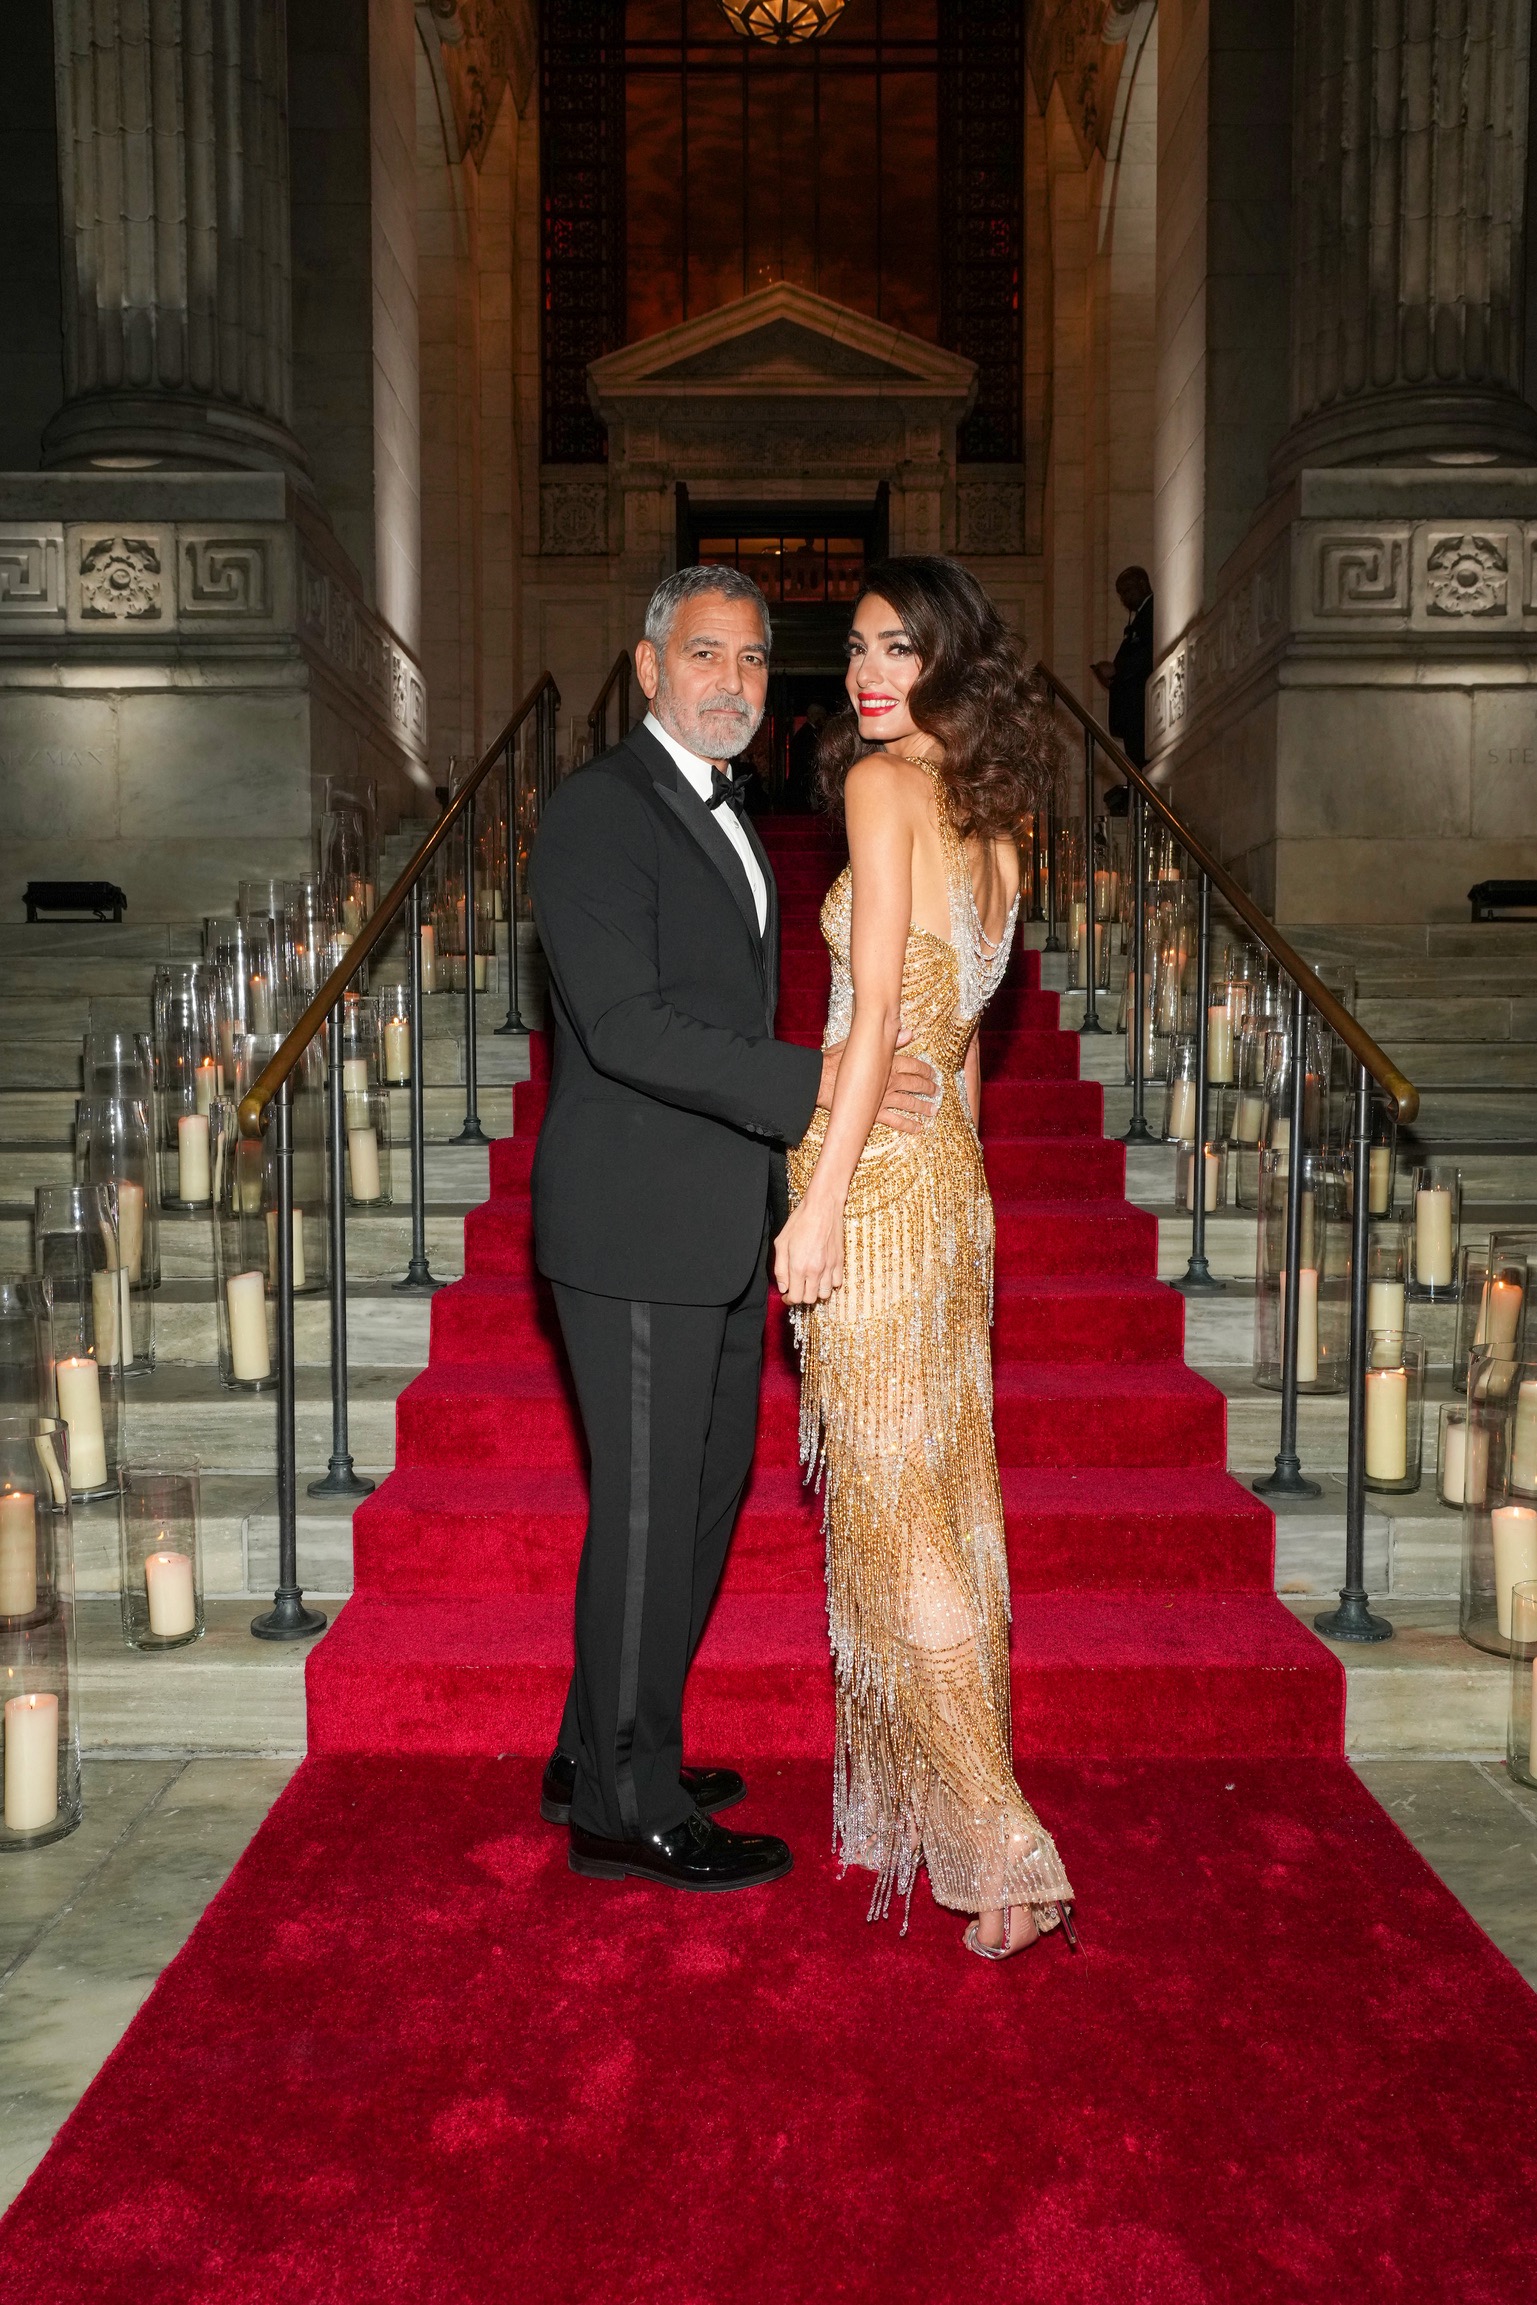 George et Amal Clooney assistent à la cérémonie inaugurale des prix Albie de la Fondation Clooney pour la justice à la bibliothèque publique de New York, le 29 septembre 2022 à New York. | Source : Getty Images